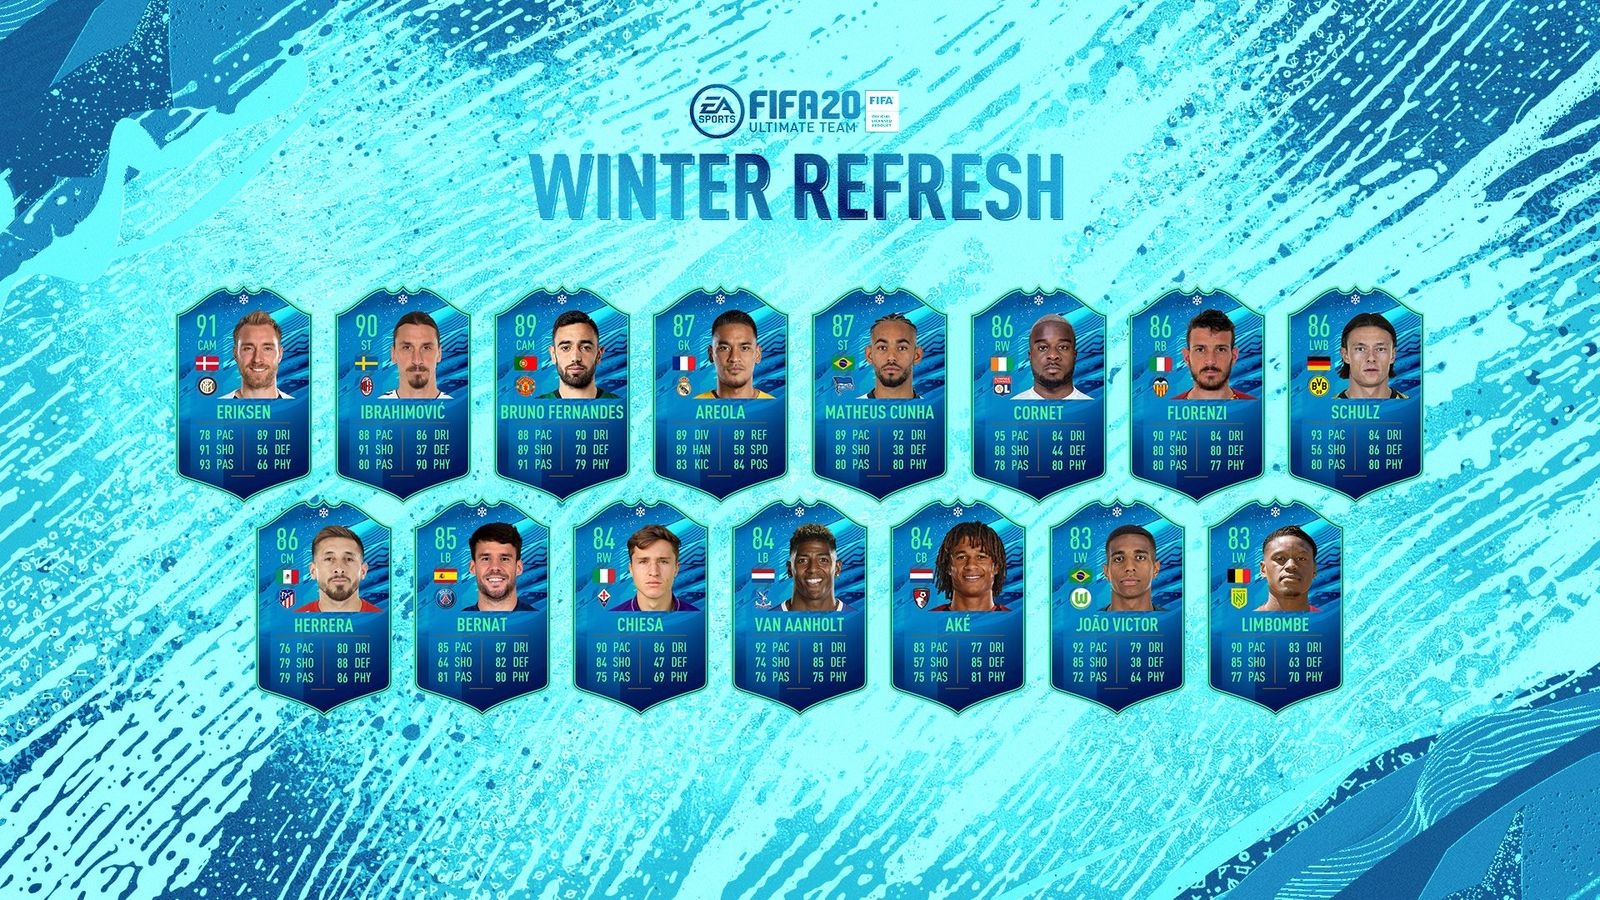 fifa 20 winter refresh squad